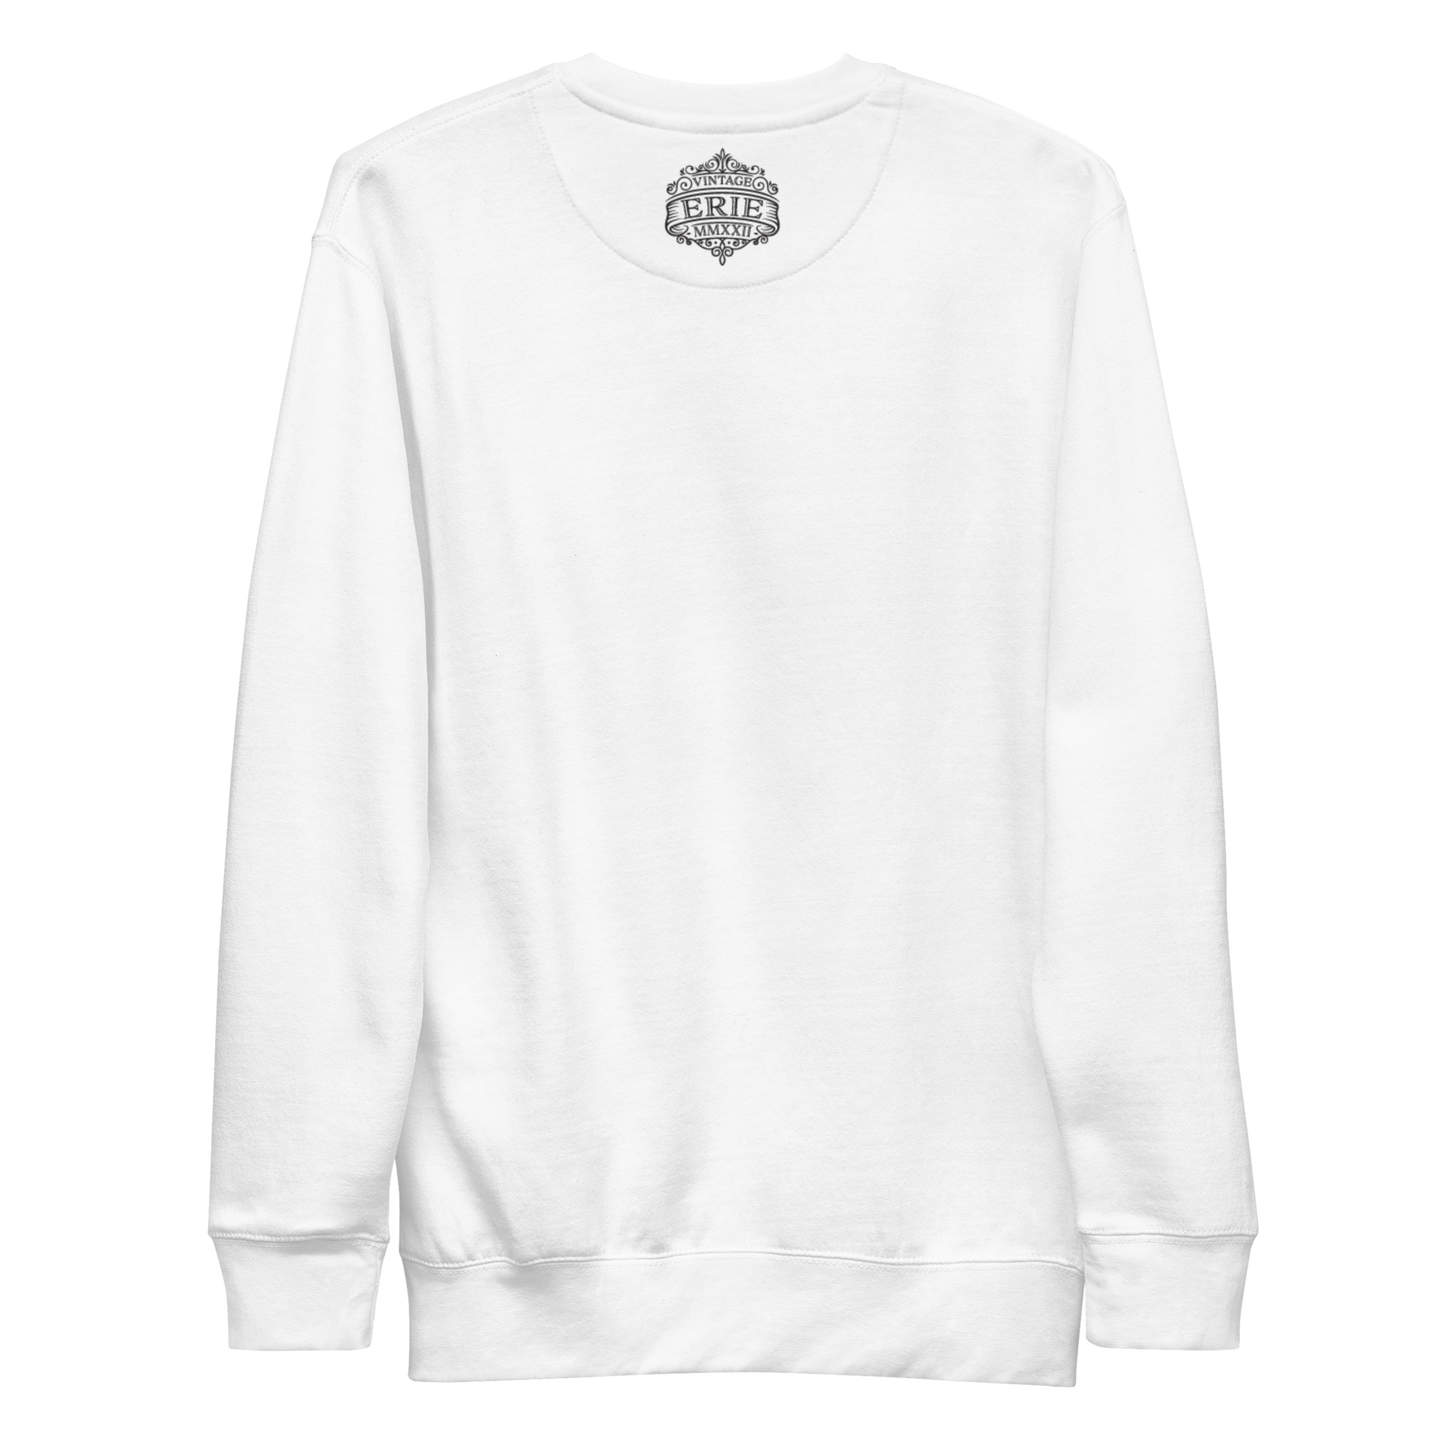 Skate Lodge Unisex Sweatshirt (Black Print)